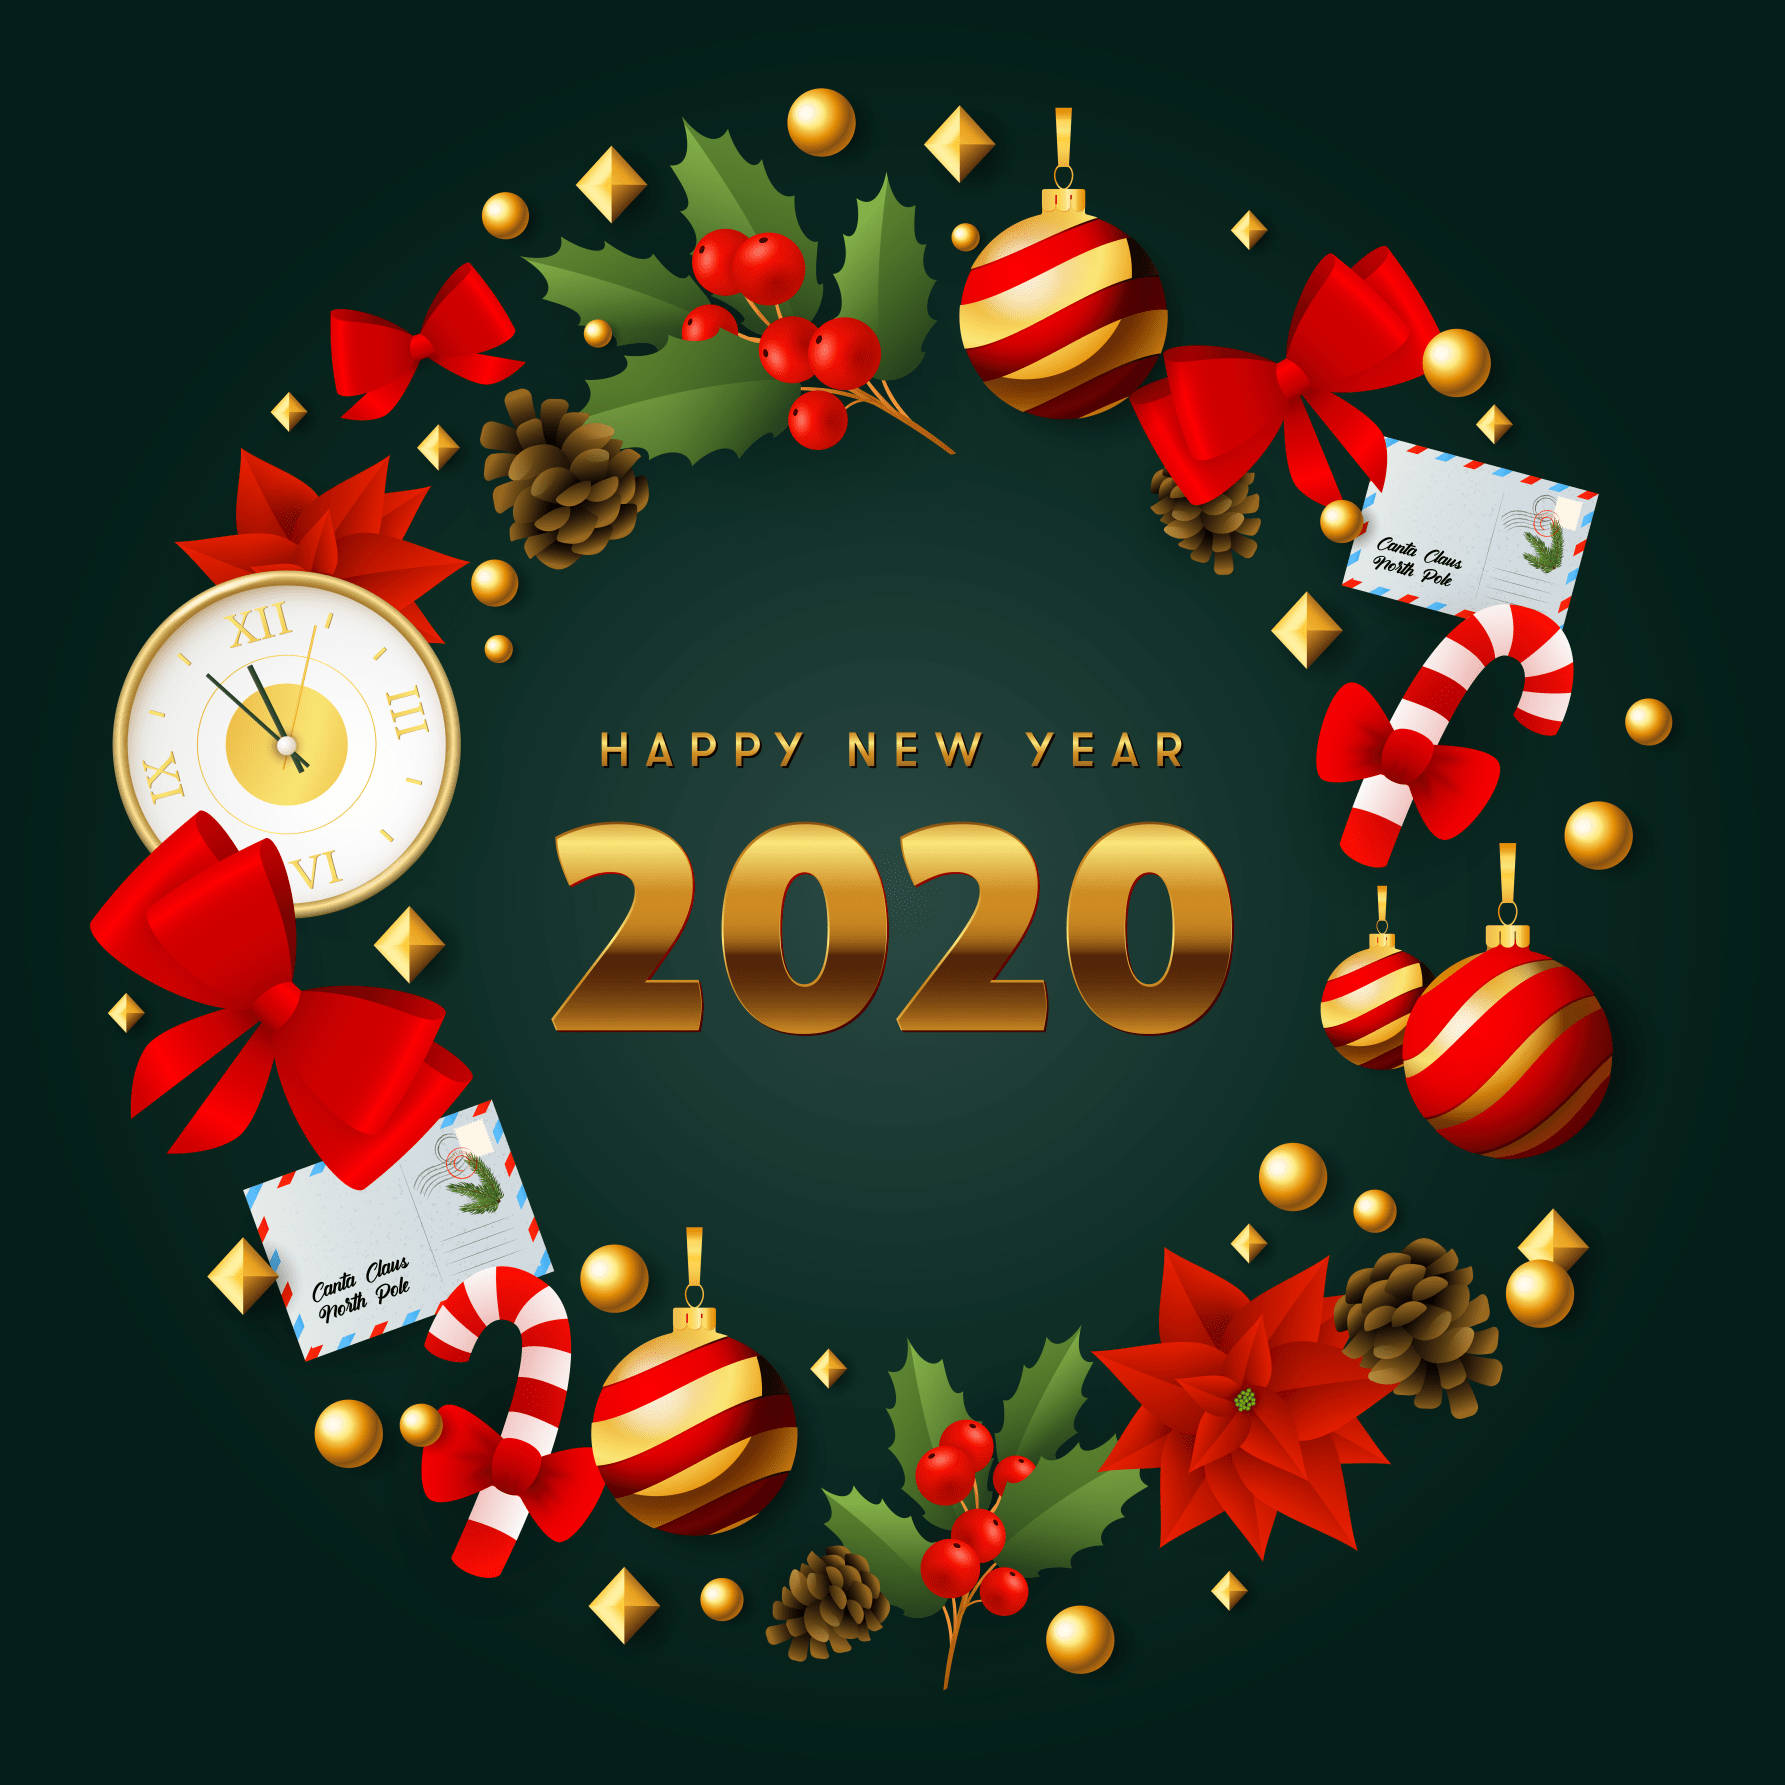 Dêas Boas-vindas Ao Novo Começo De 2020 Com Um Desejo De Feliz Ano Novo! Papel de Parede